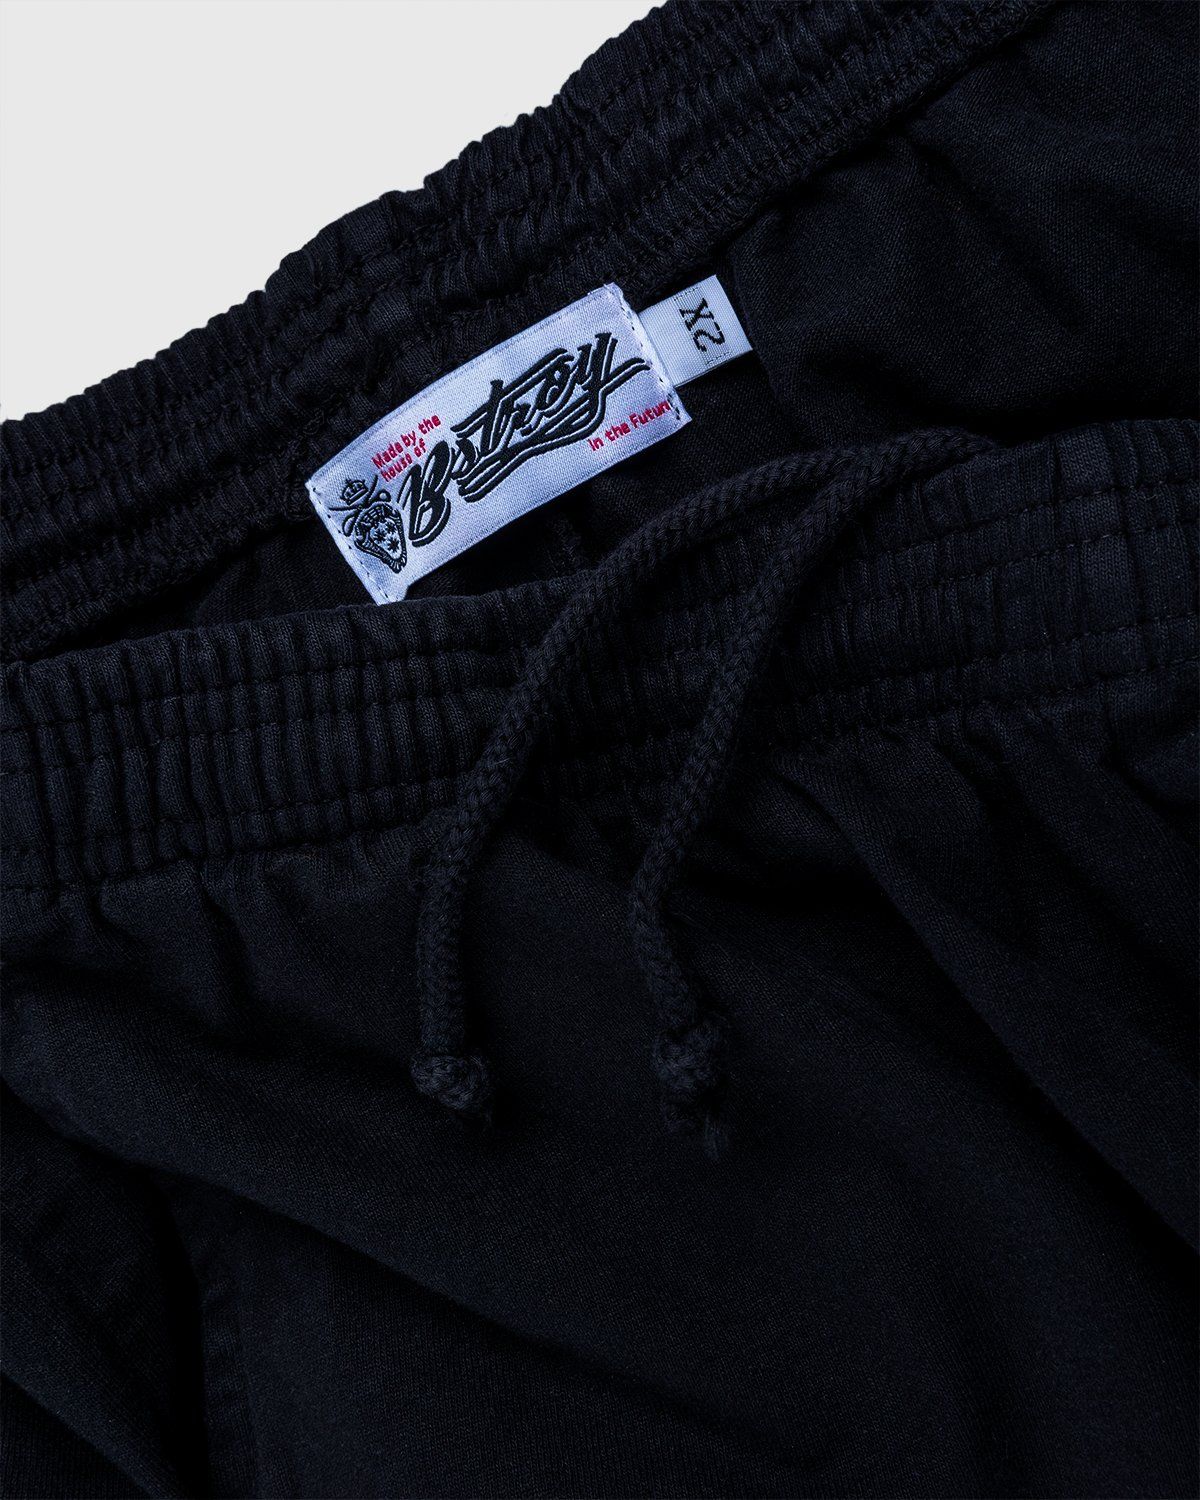 Bstroy x Highsnobiety – Shorts Black - Shorts - Black - Image 6